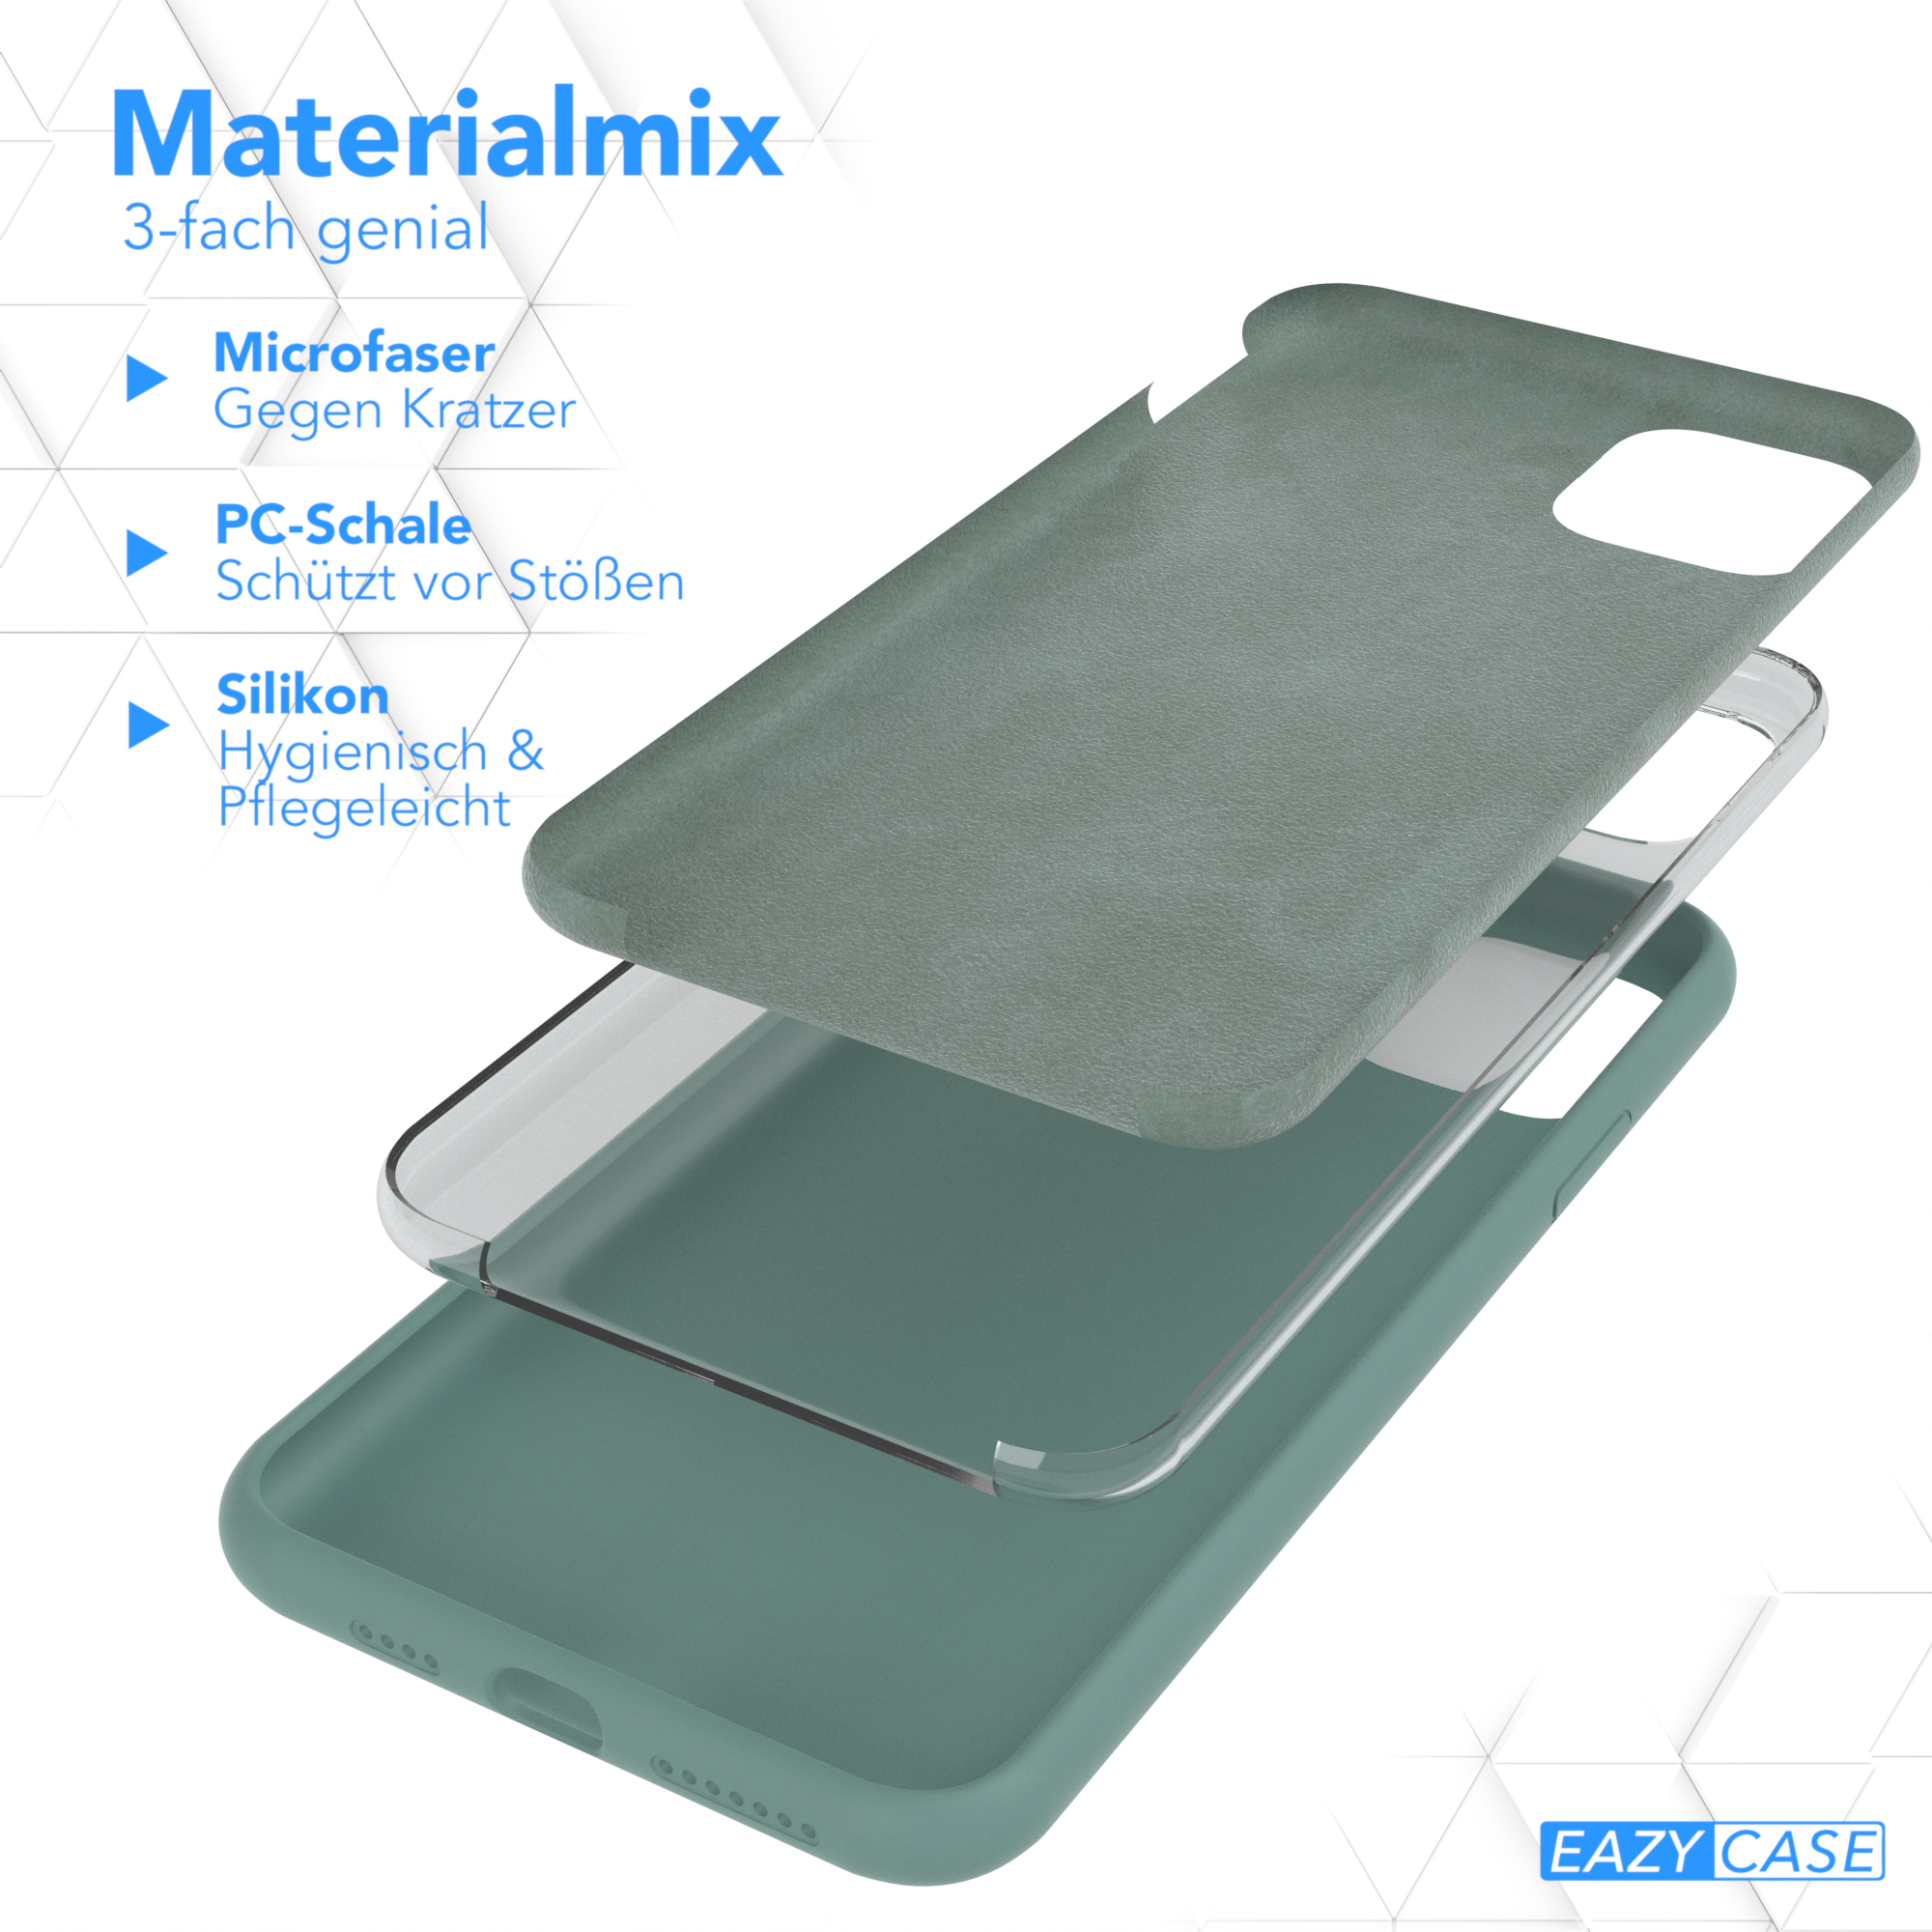 EAZY CASE Premium Silikon Handycase, / Grün Pro iPhone 11 Max, Nachtgrün Apple, Backcover